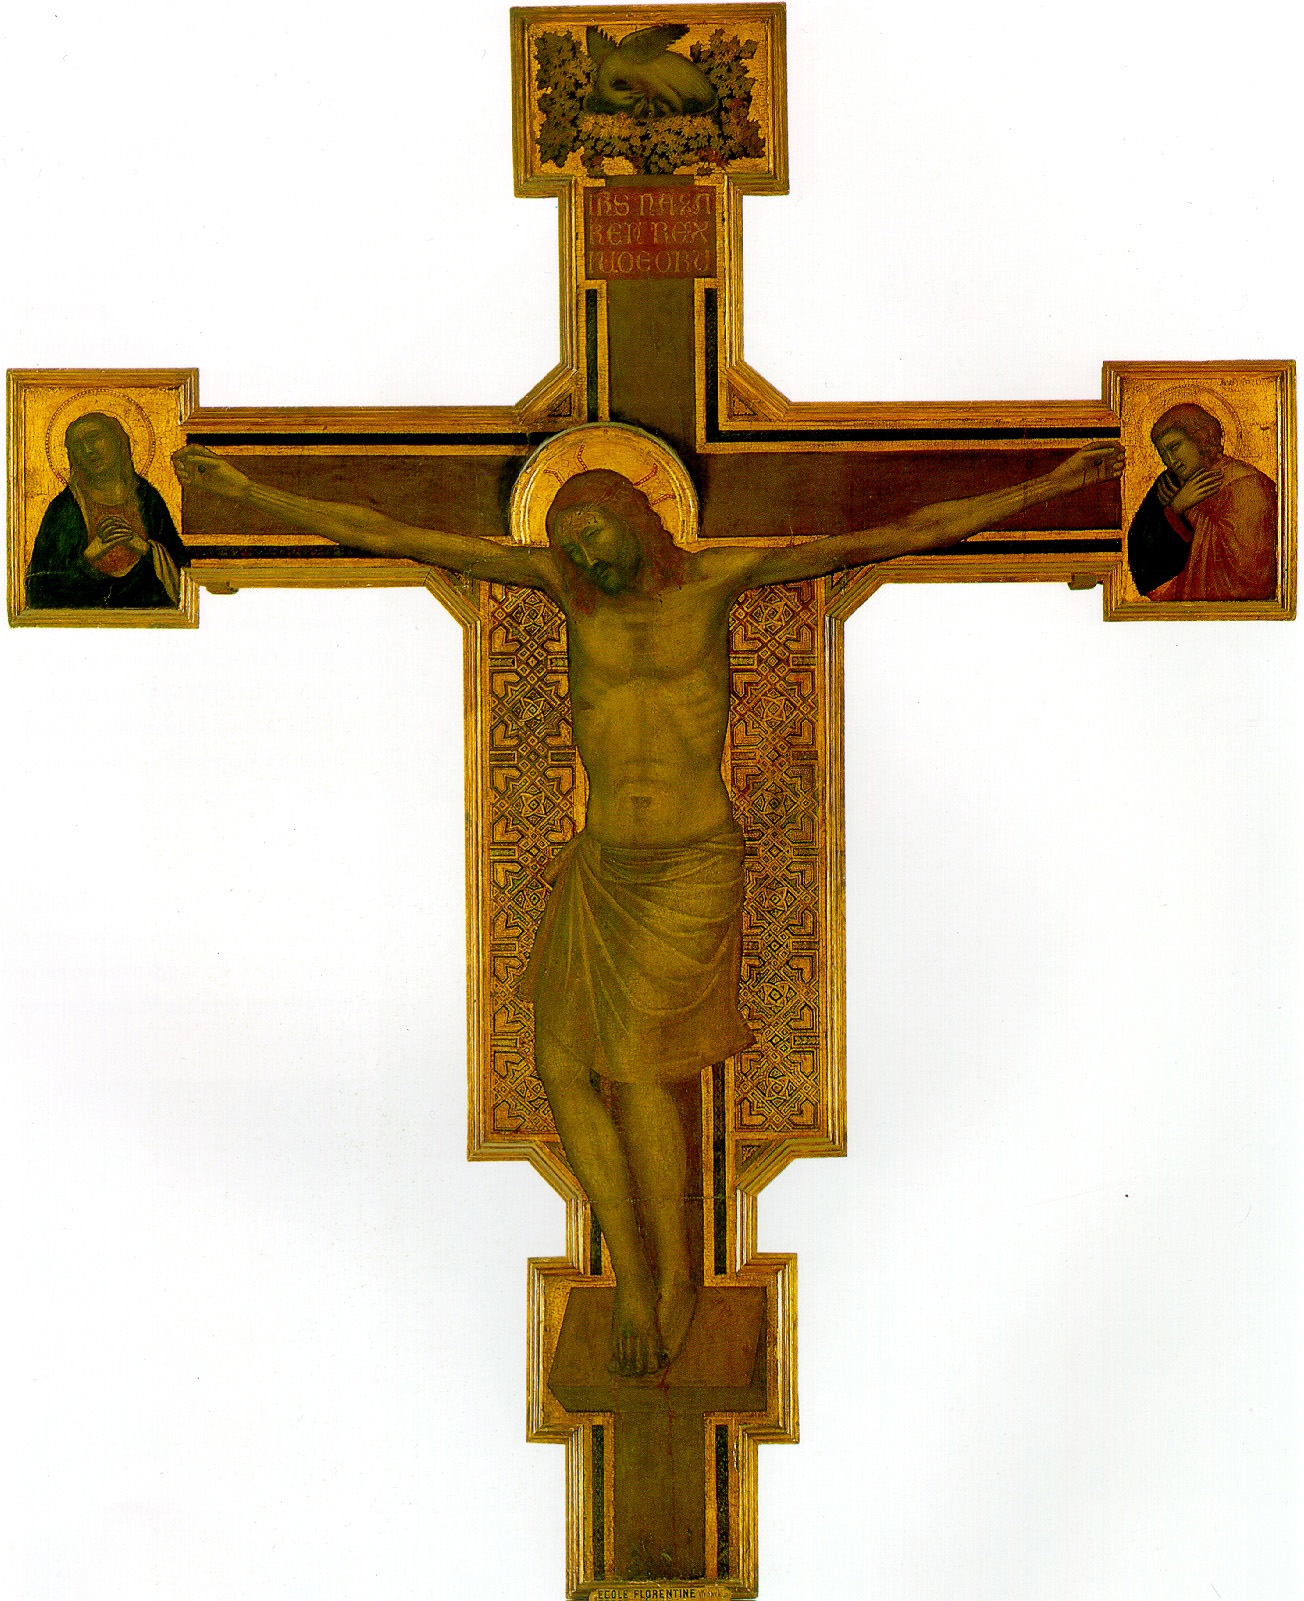 Мастерская Джотто. Распятие с Богоматерью, святым Иоанном Евангелистом и пеликаном на верхнем конце креста.